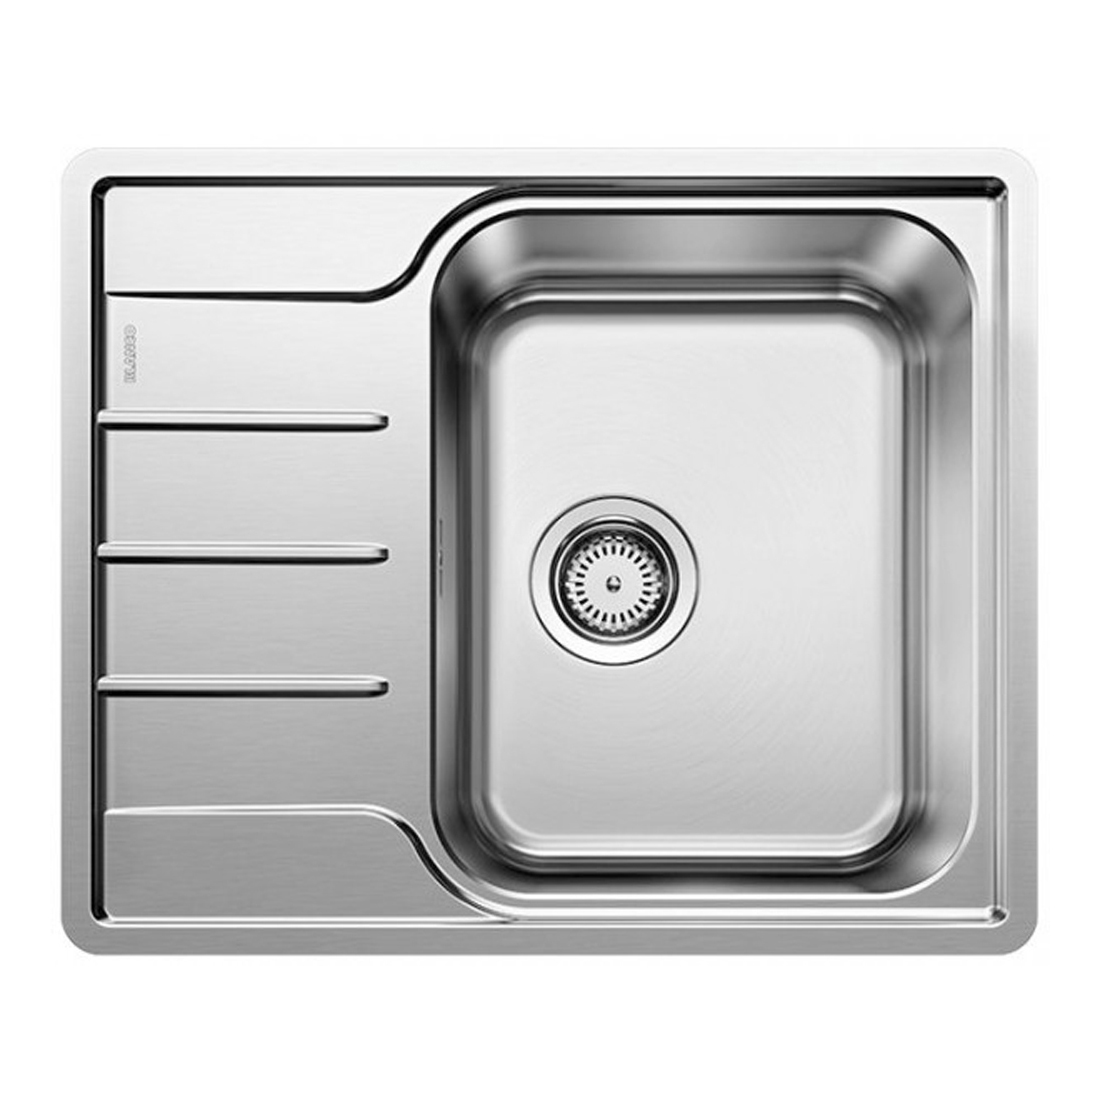 Кухонная мойка Blanco Lemis 45 S-IF Mini полированная сталь кухонная мойка blanco solis 500 u полированная сталь